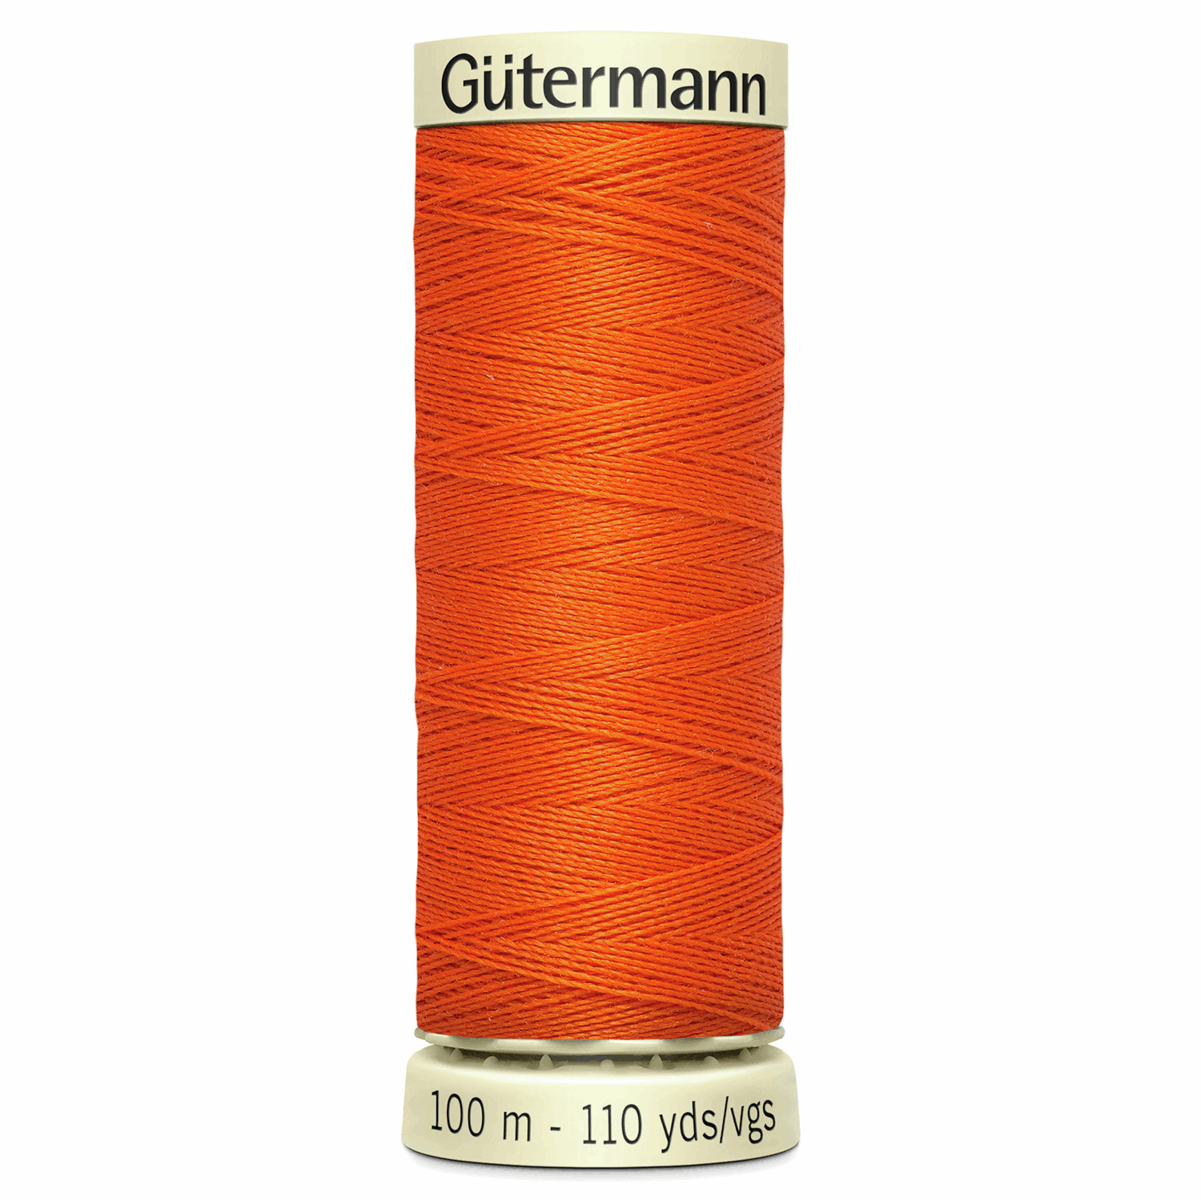 Gutermann Sew-All Thread 100m - Bright Orange (#351)